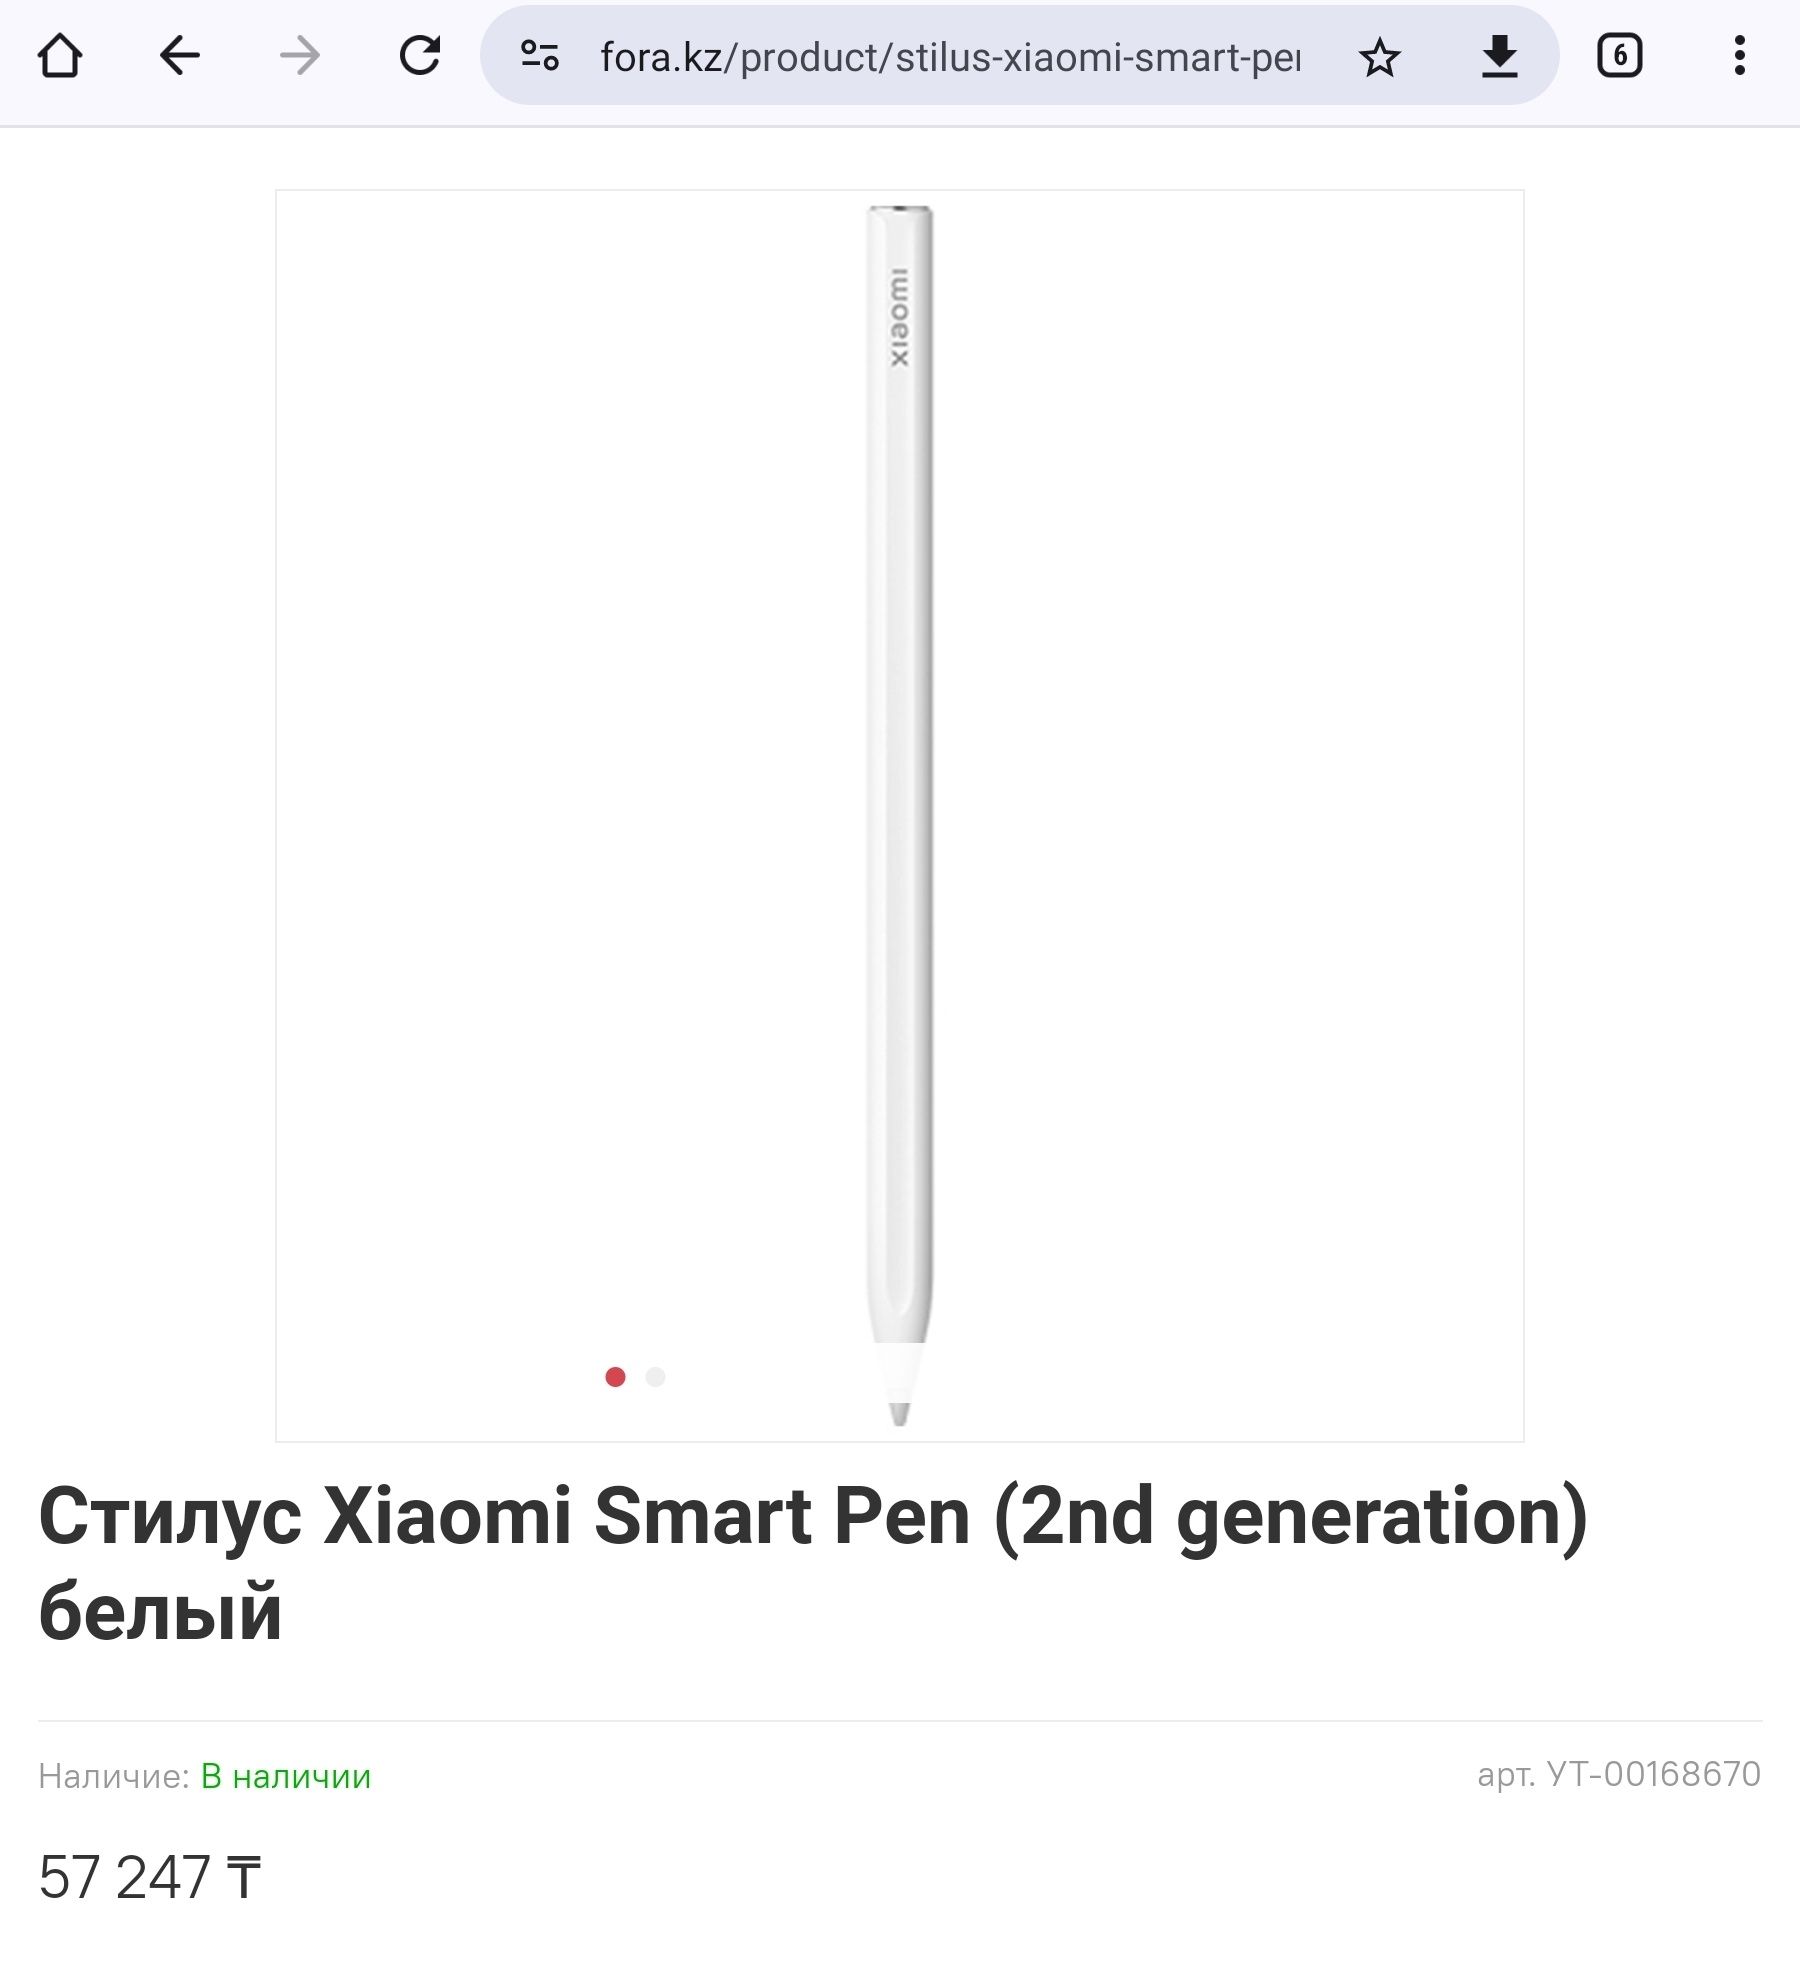 Стилус Xiaomi Smart Pen (2nd generation) (умная ручка для планшета)